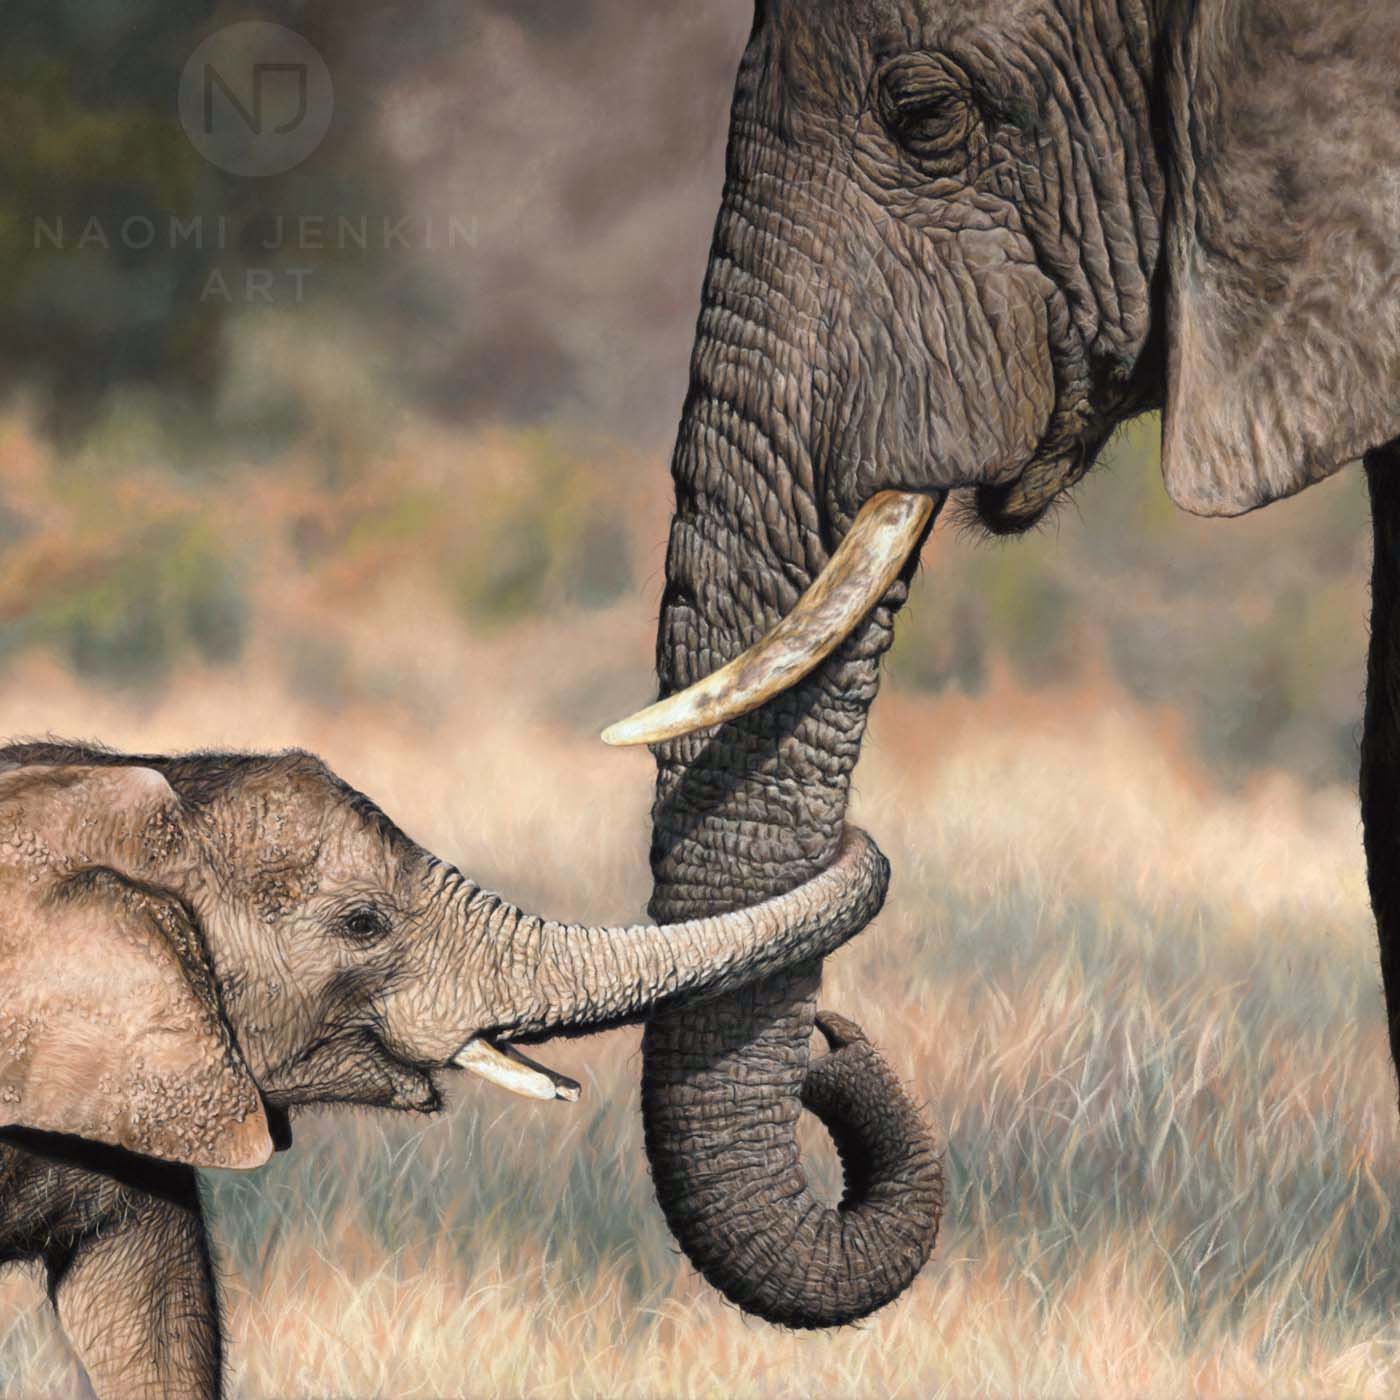 Elephant art by wildlife artist Naomi Jenkin.